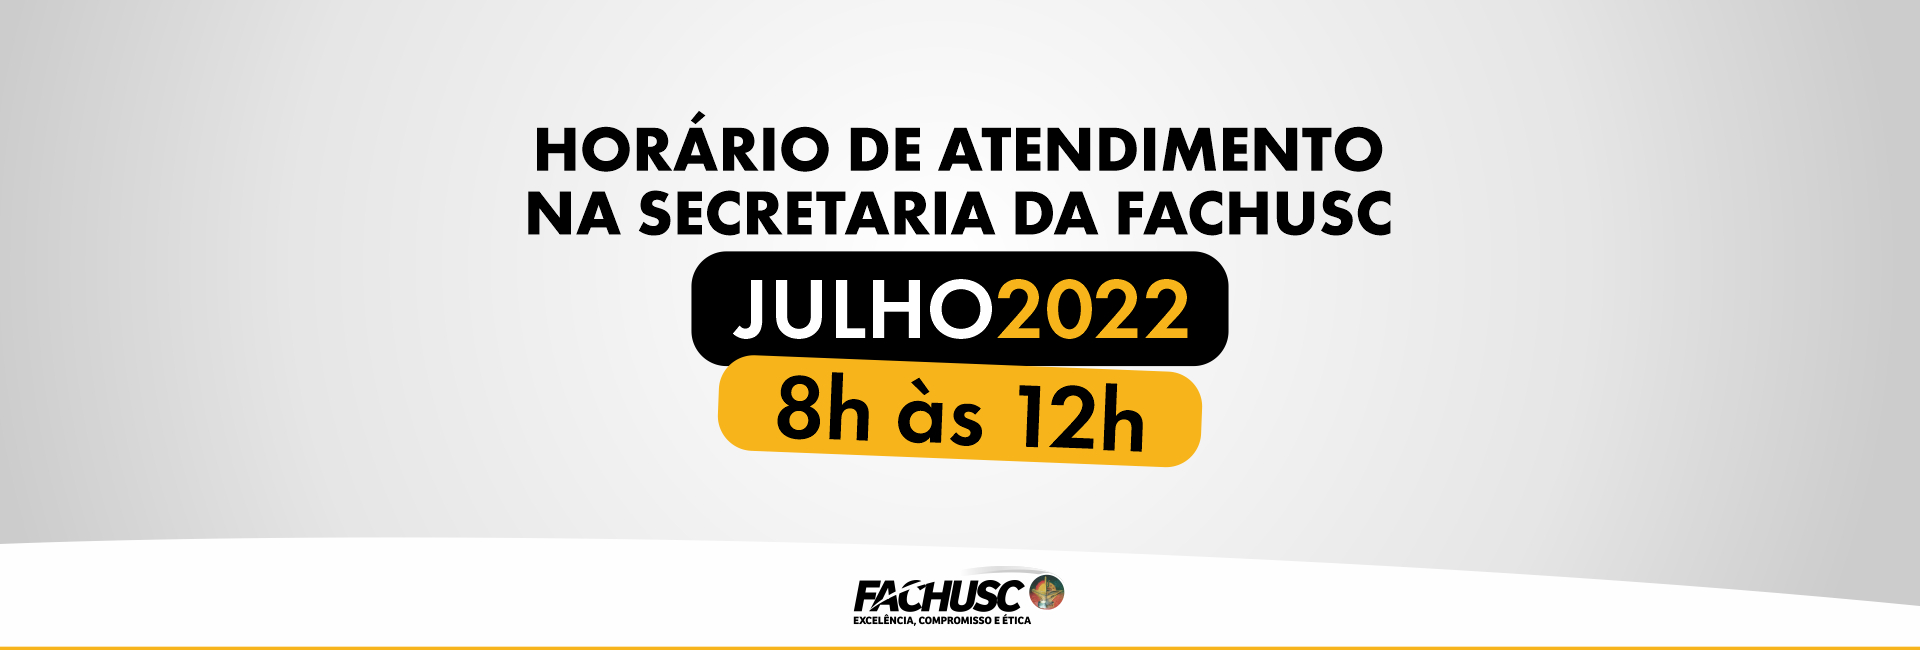 Funcionamento da Secretaria da FACHUSC em Julho/2022.